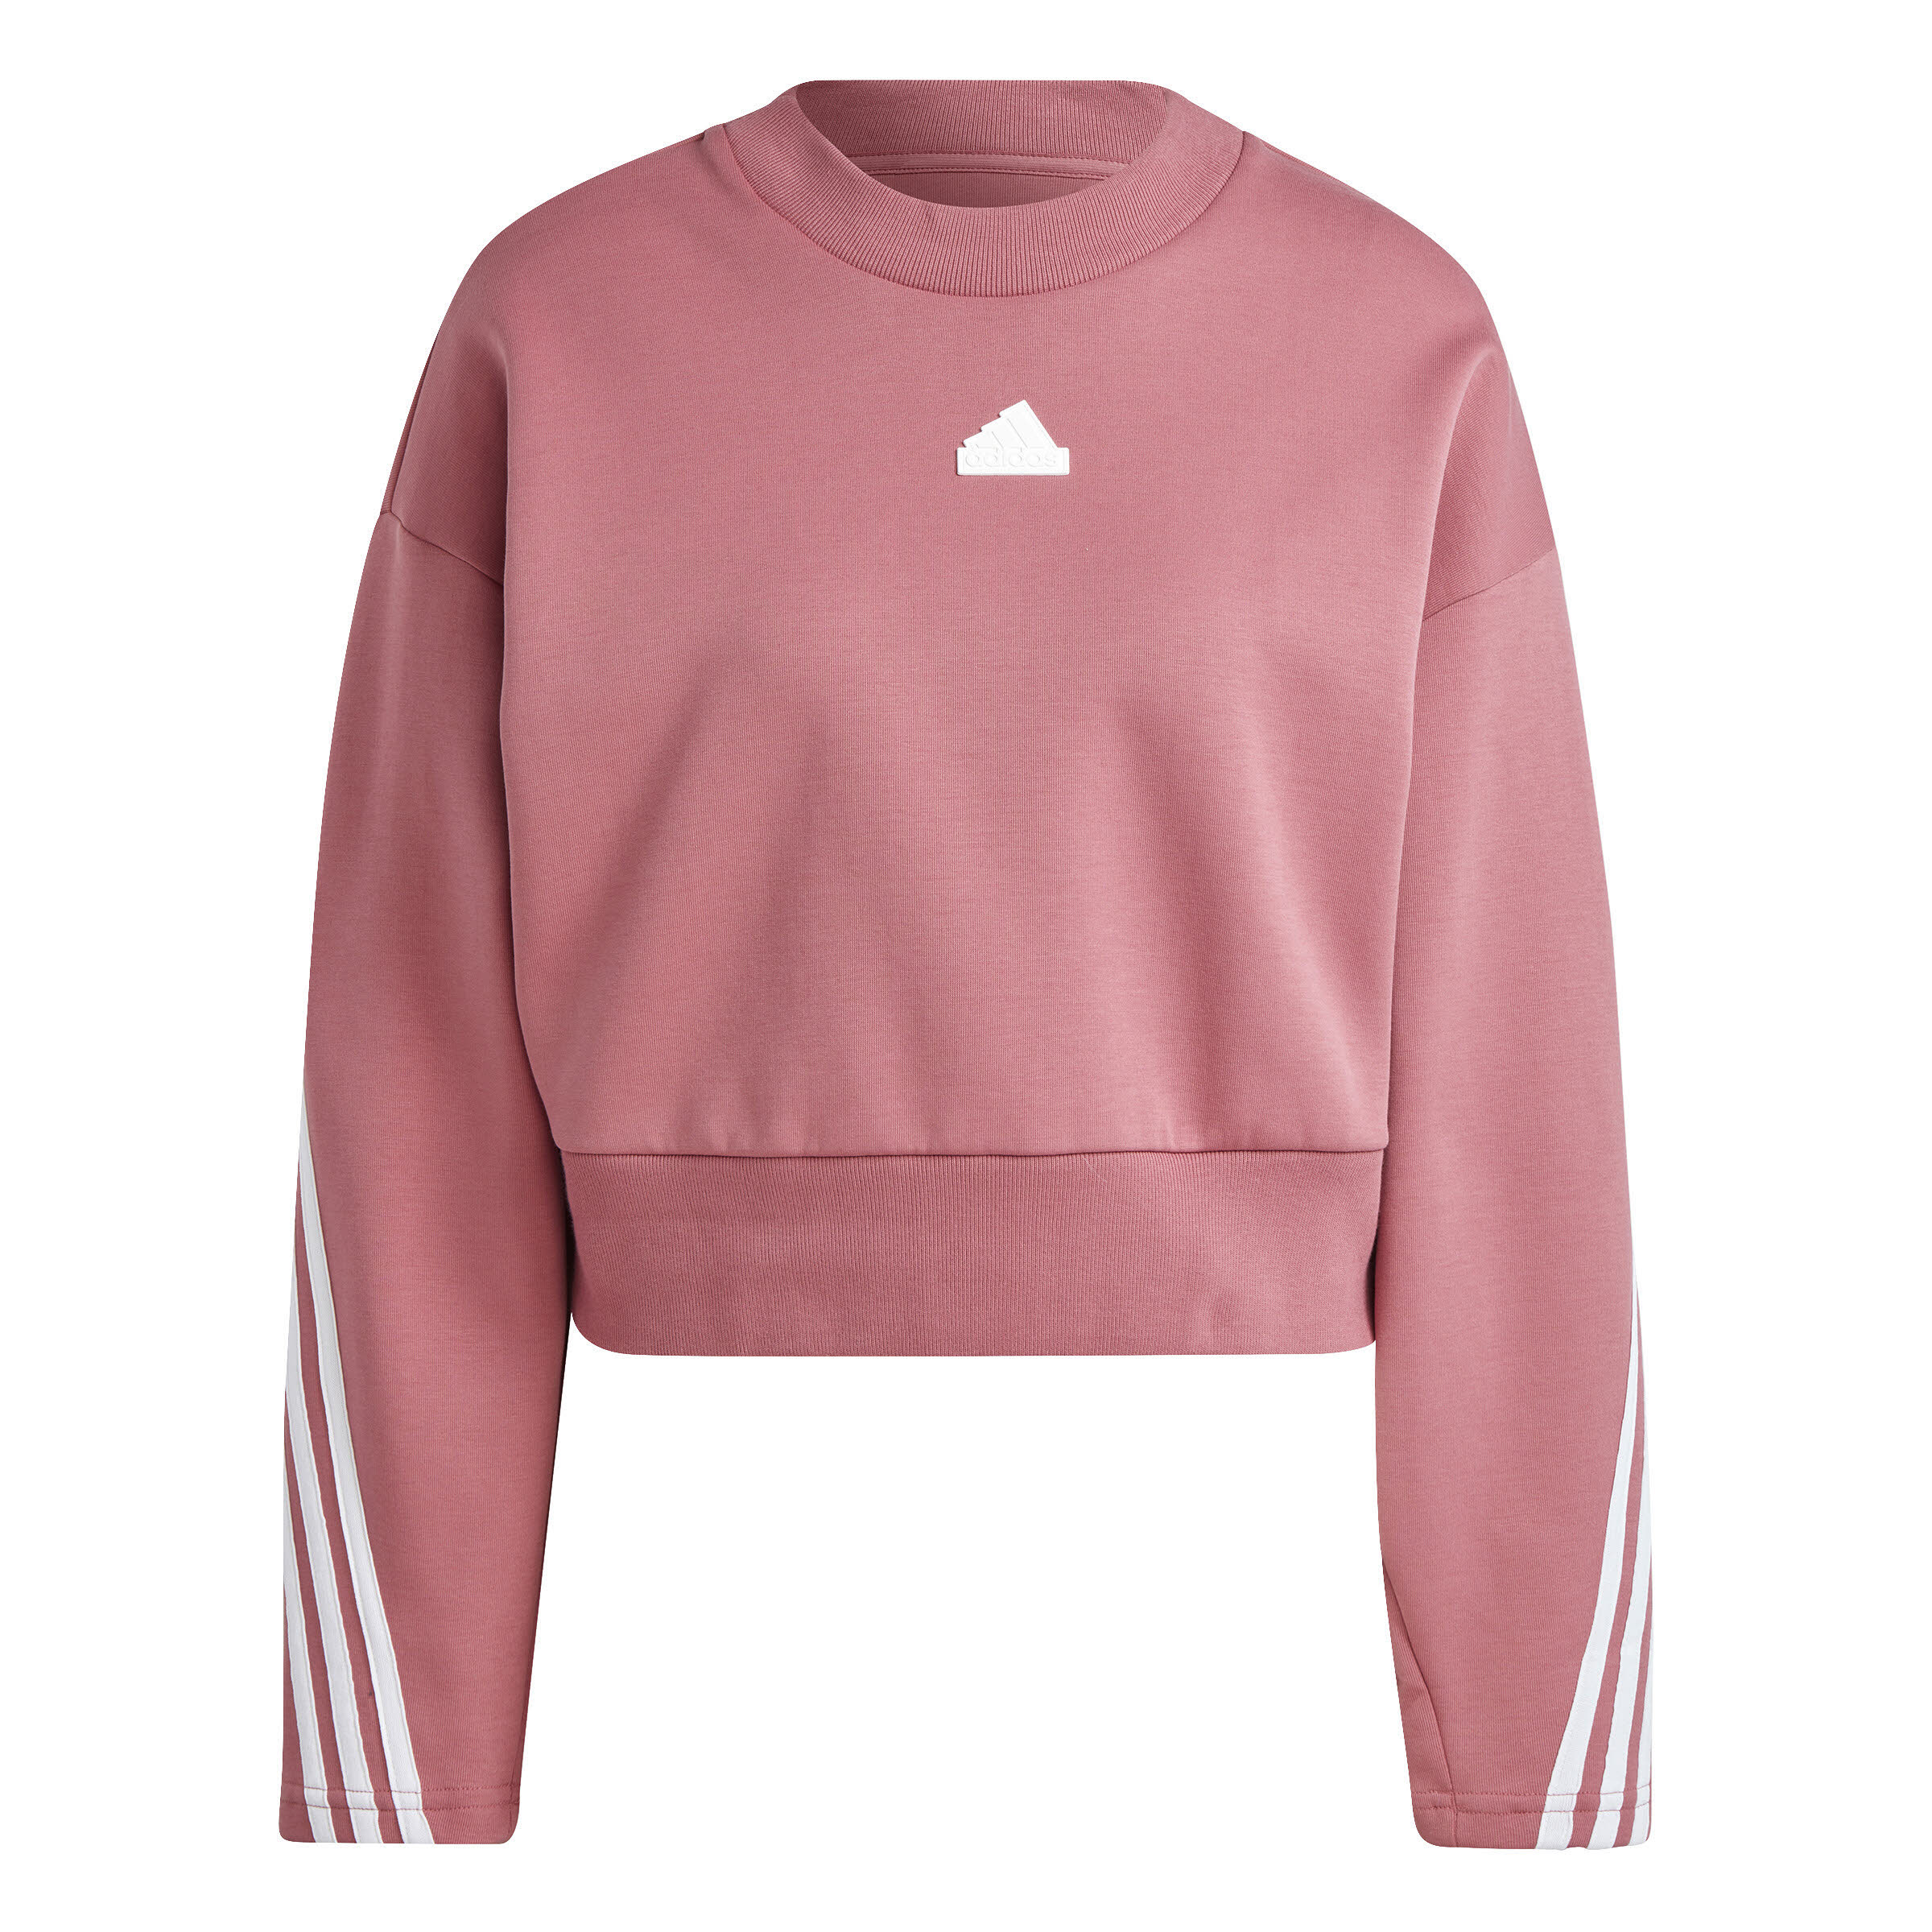 adidas Future Icons 3 Streifen Damen Sweatshirt Pullover Rosa Weiß